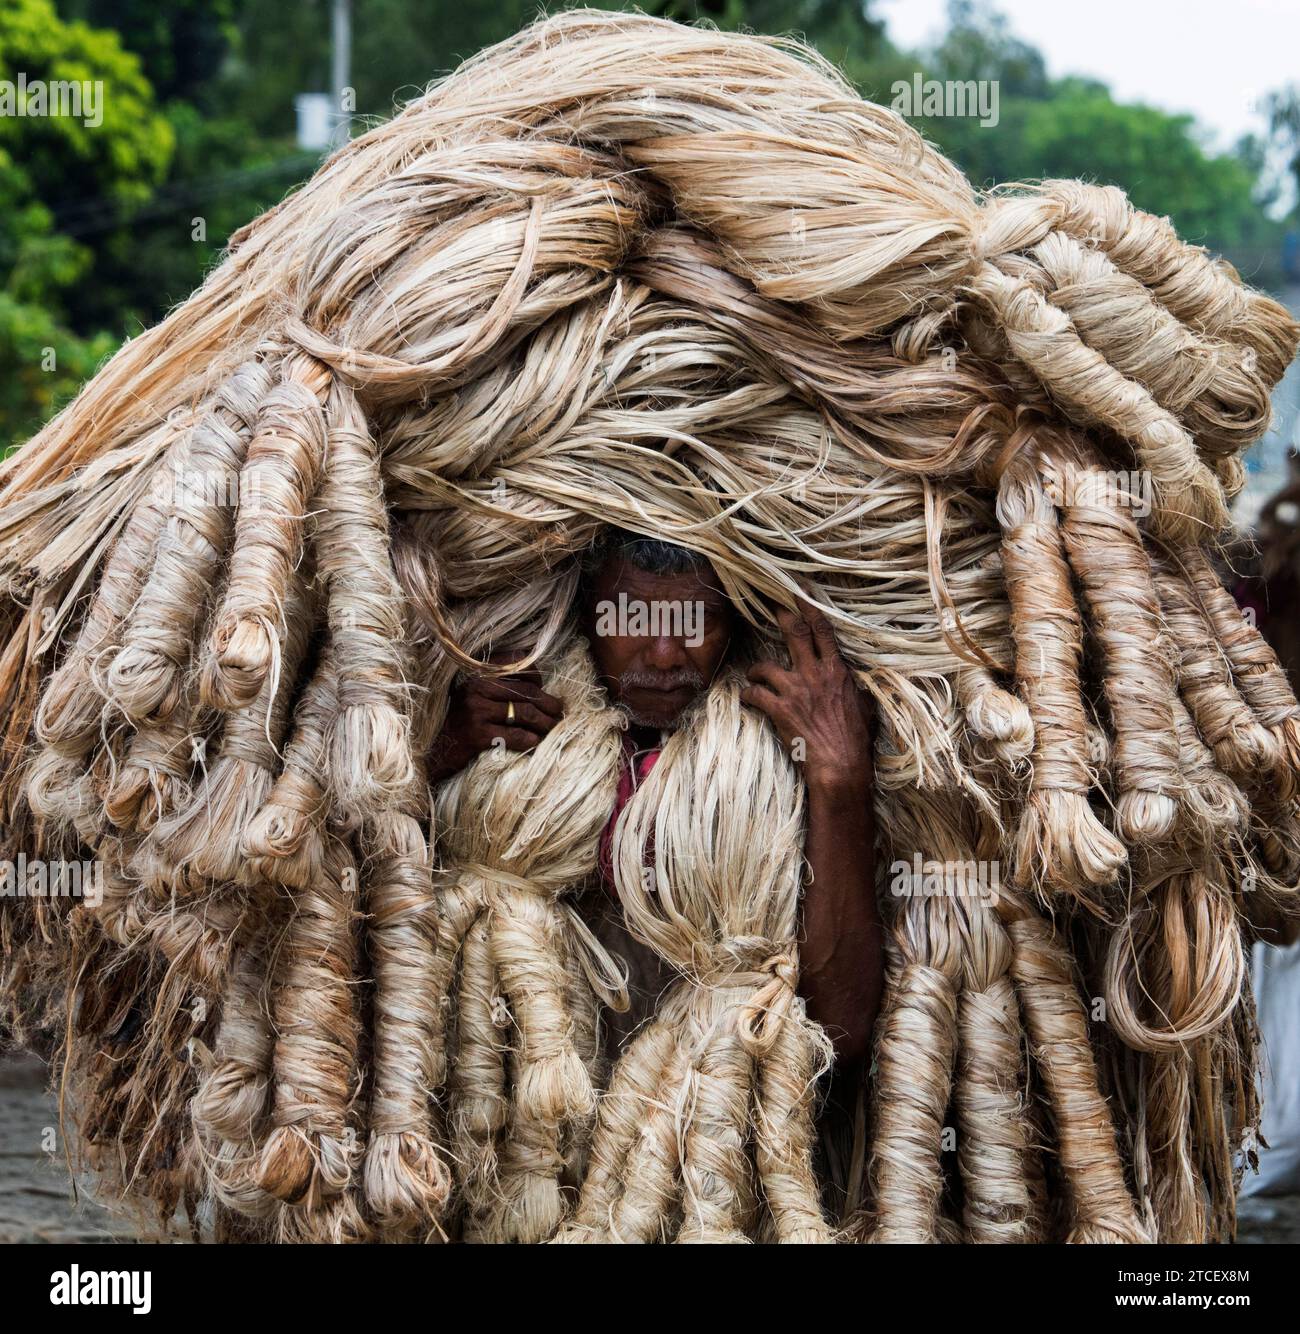 Manikganj -06 septembre 2023 : personnes vue portrait d'une personne transportant un lourd panier de fibre de jute dans un marché, les travailleurs de la vie quotidienne. Manikganj Banque D'Images